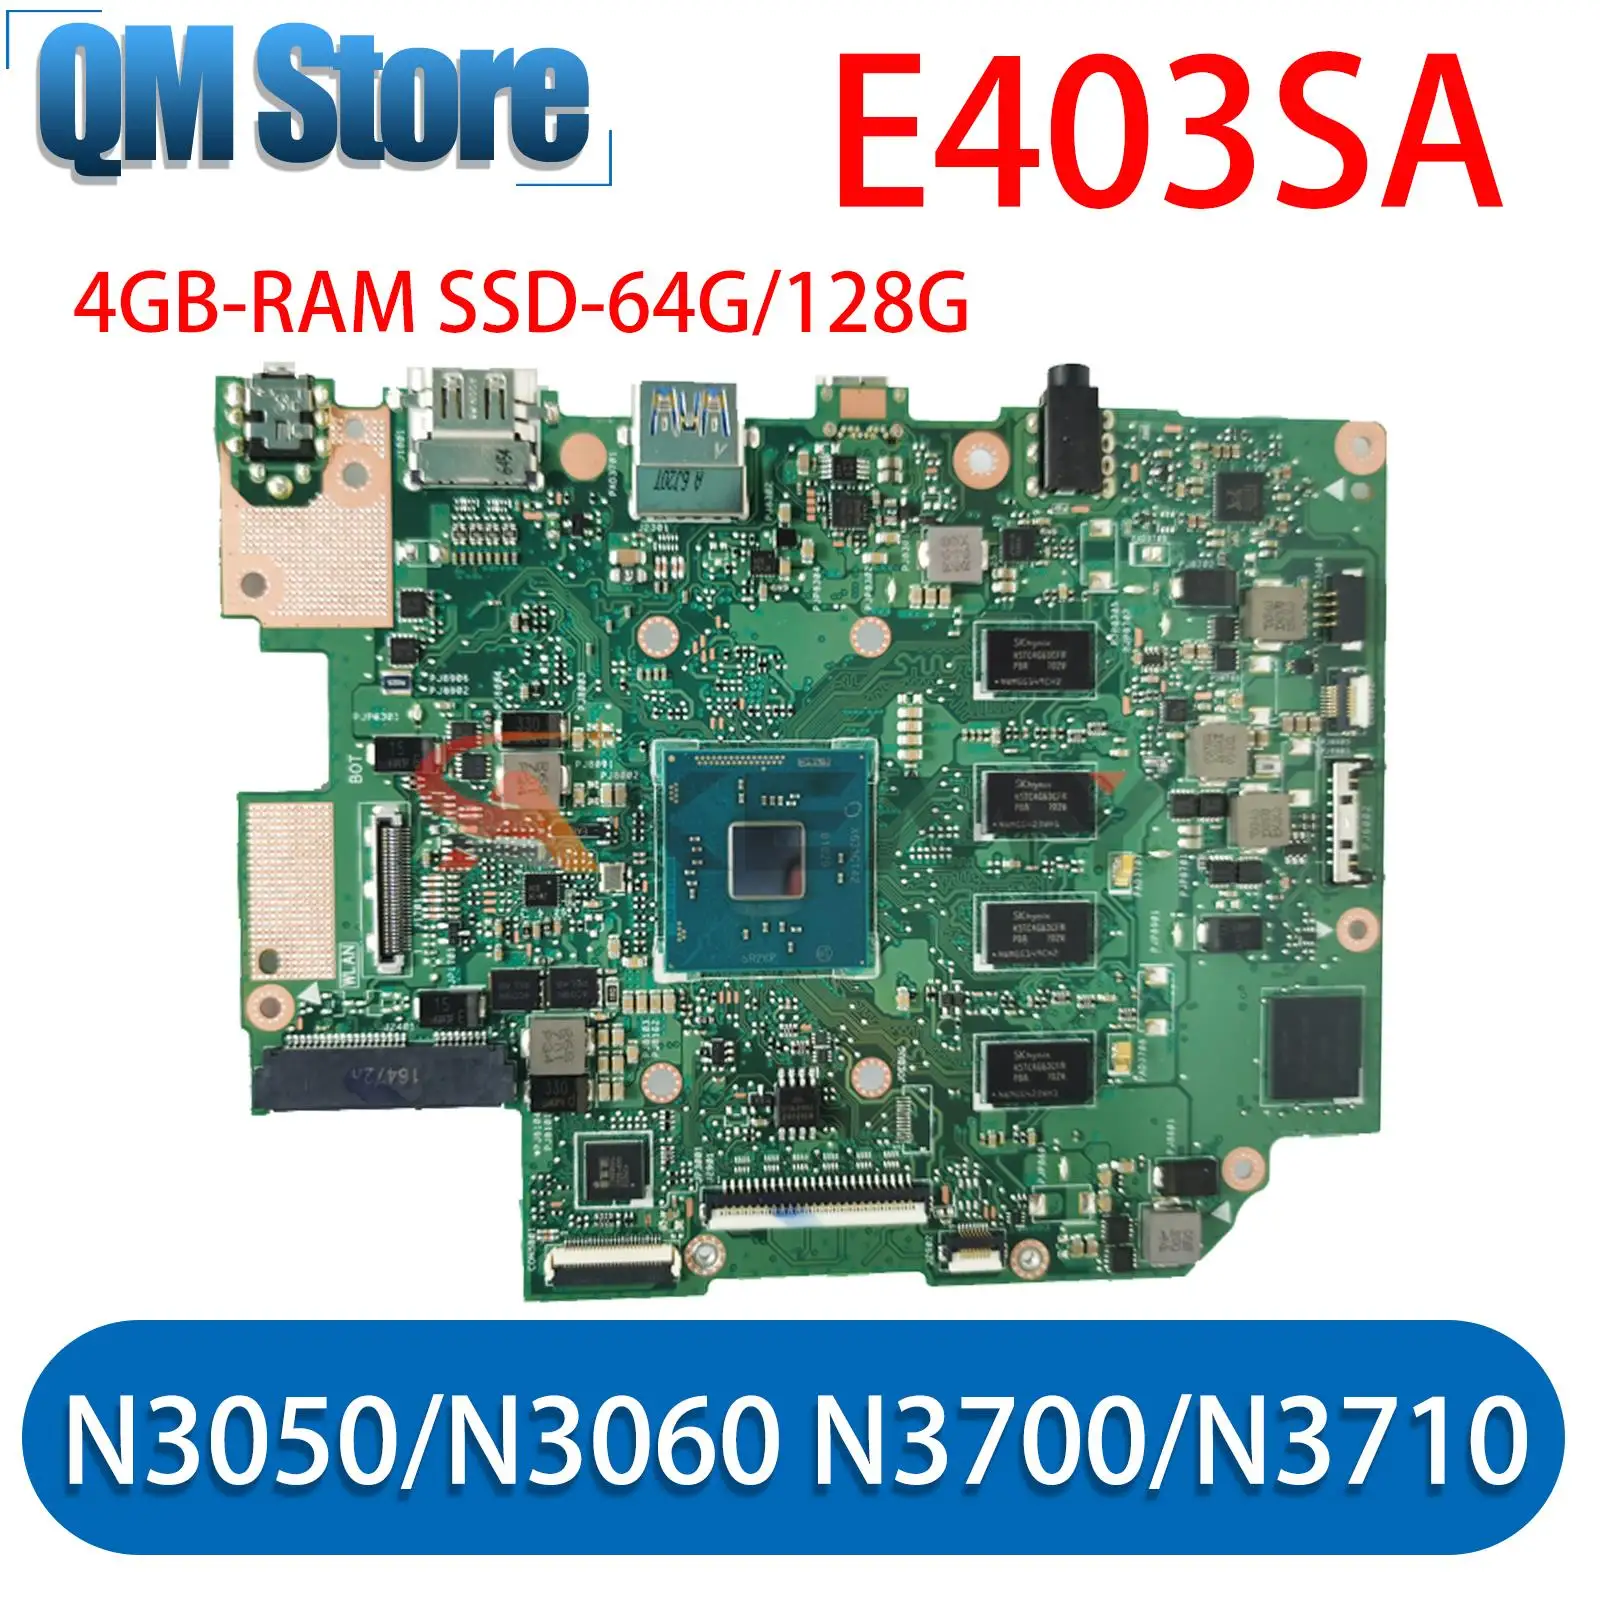 

E403SA original MainBoard w/ 4GB RAM N3050/N3060 N3700/N3710 CPU SSD-64G/128G for ASUS E403SA E403S Laptop Motherboard